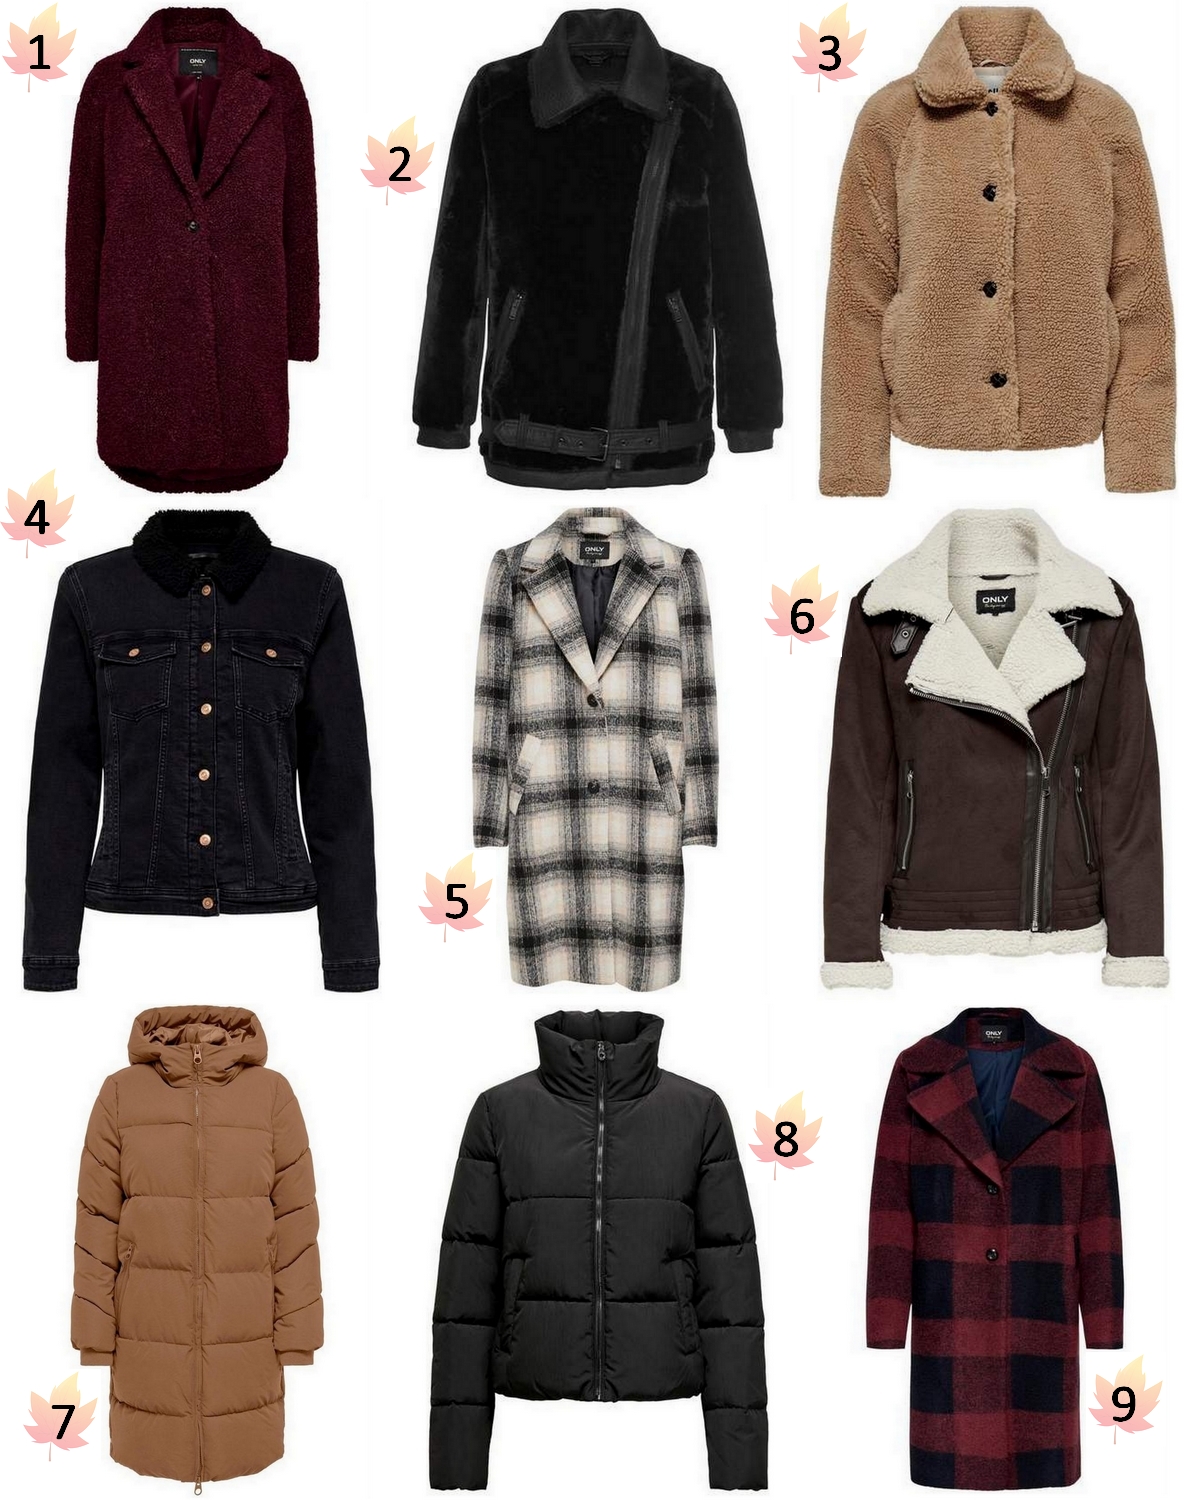 Klant Kerkbank geloof Shop tip | 9x mooie jassen voor de herfst en winter - Make People Stare